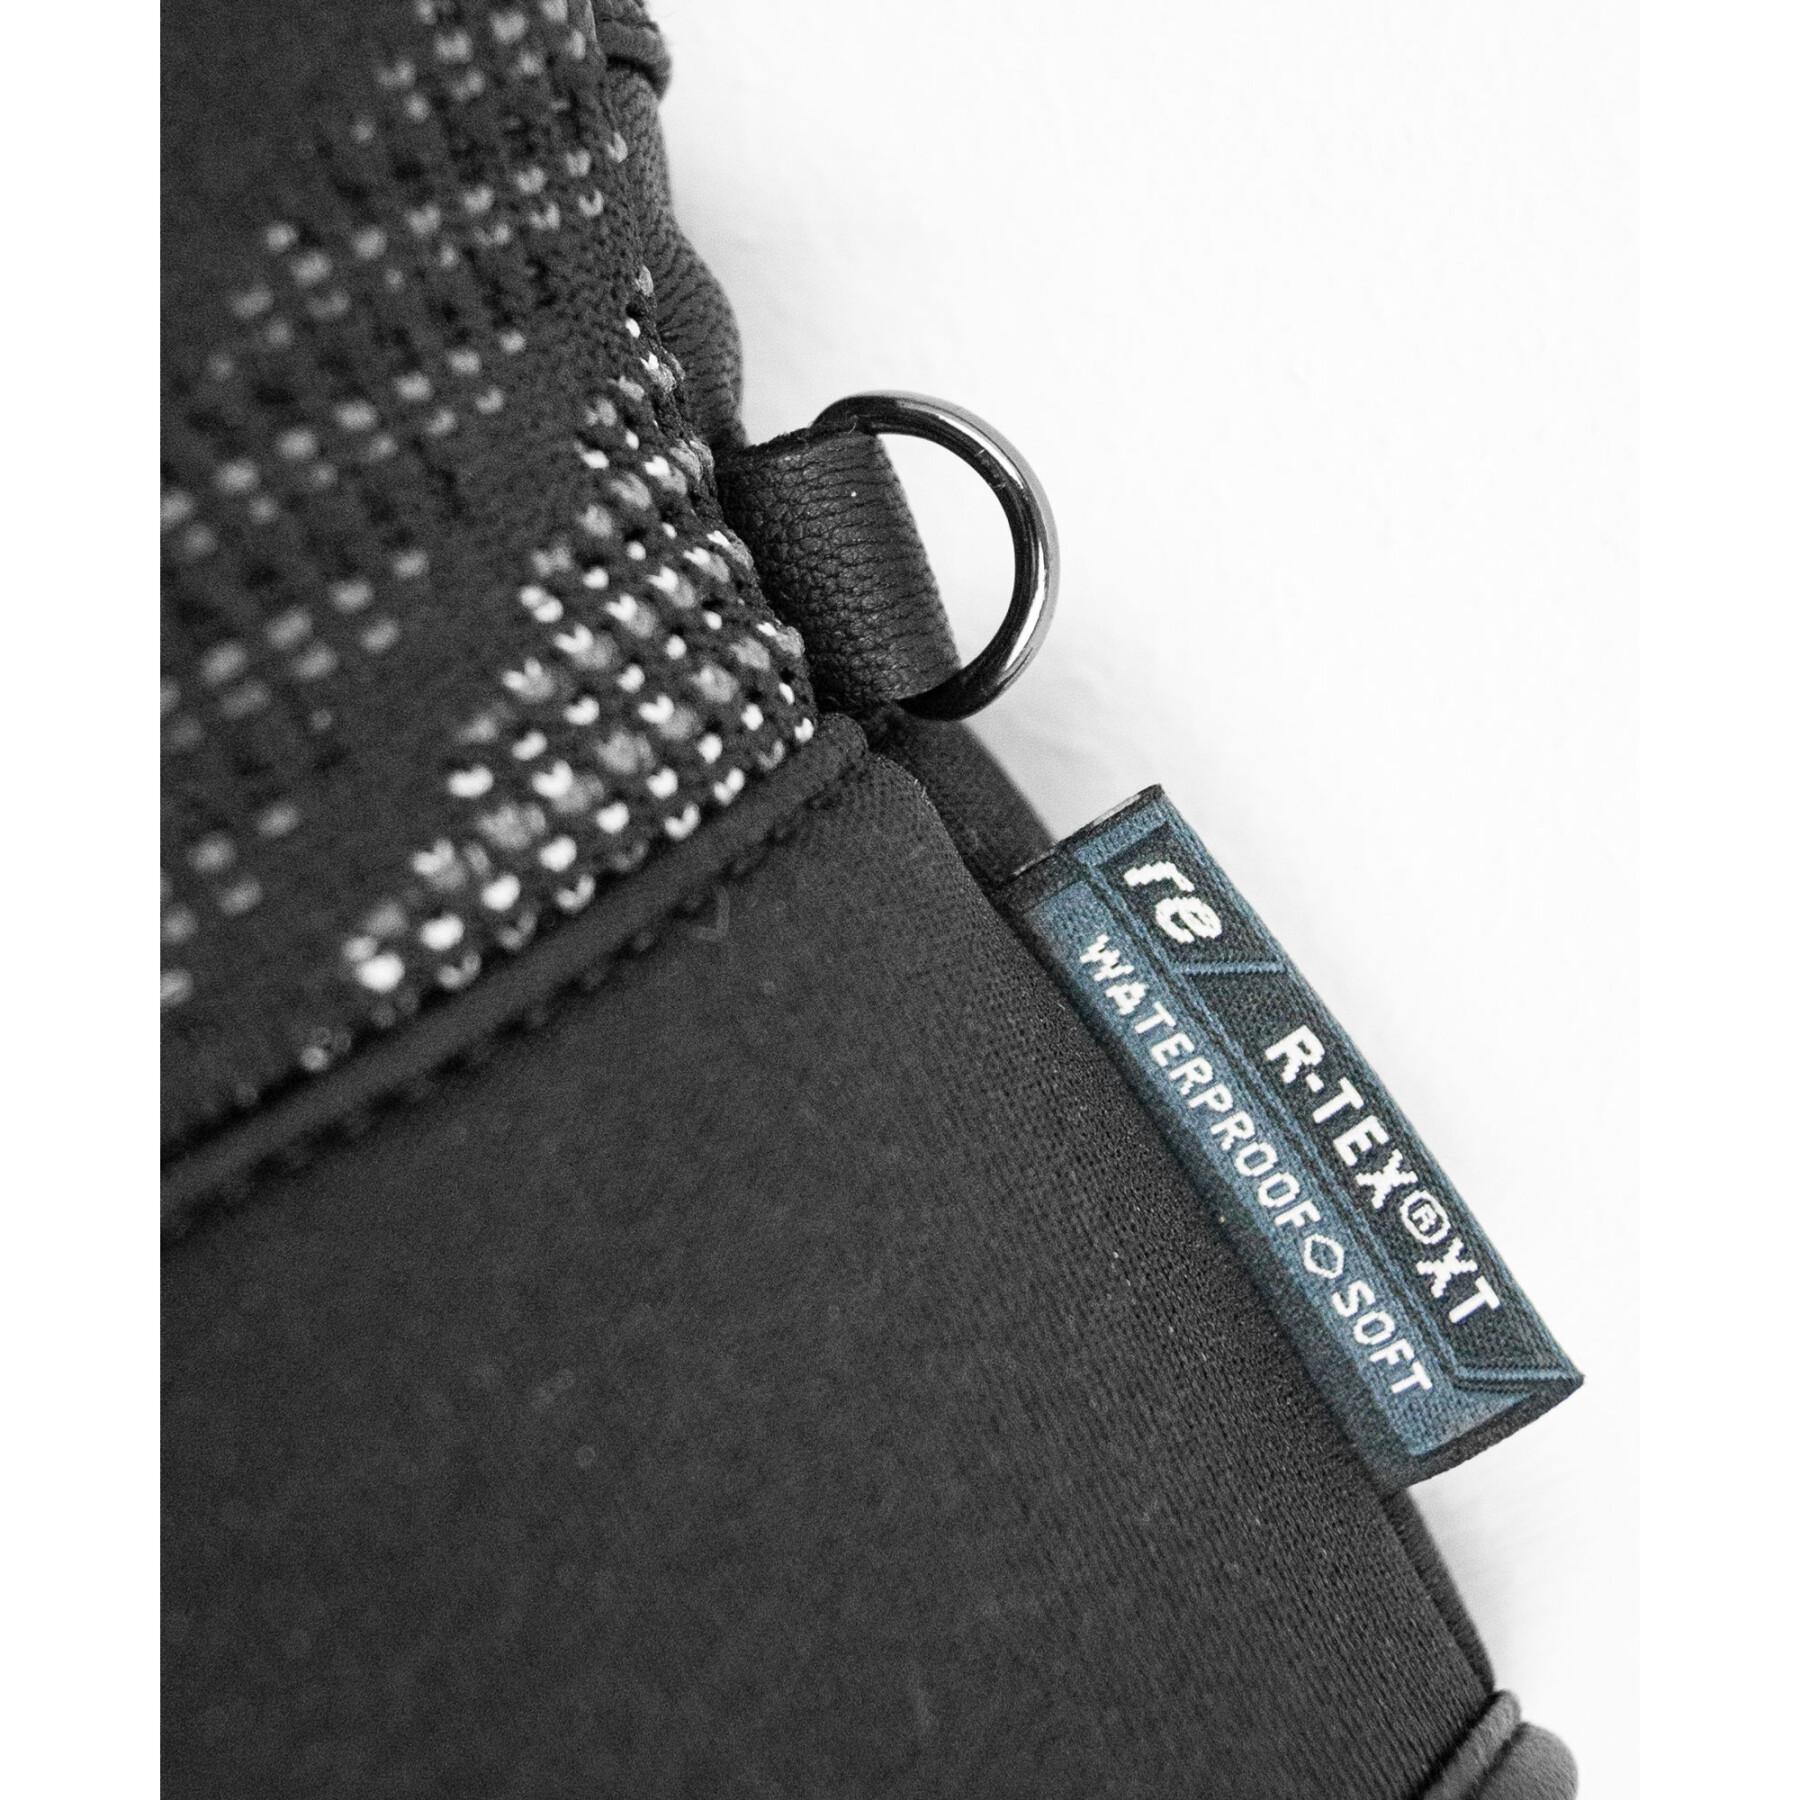 Luvas Reusch Re:Knit Eclipse R-TEX® XT